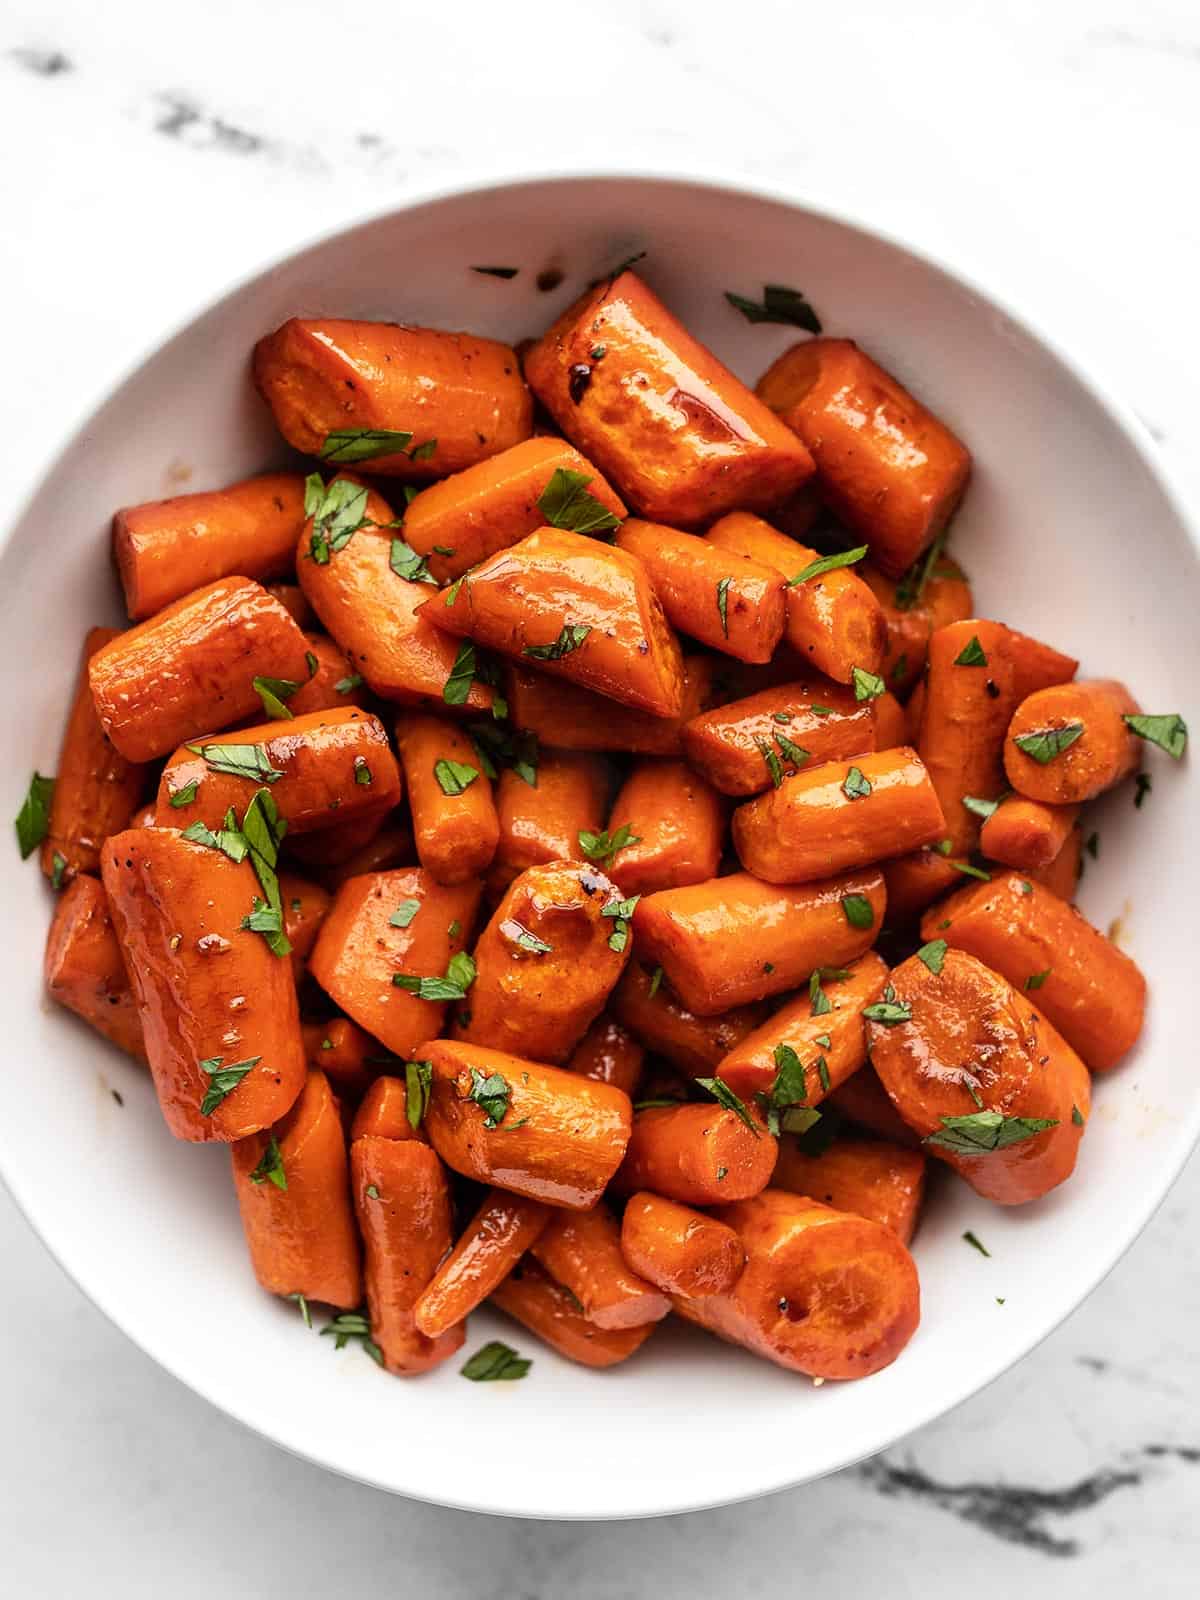 https://www.budgetbytes.com/wp-content/uploads/2012/02/Honey-Balsamic-Carrots-V1.jpg